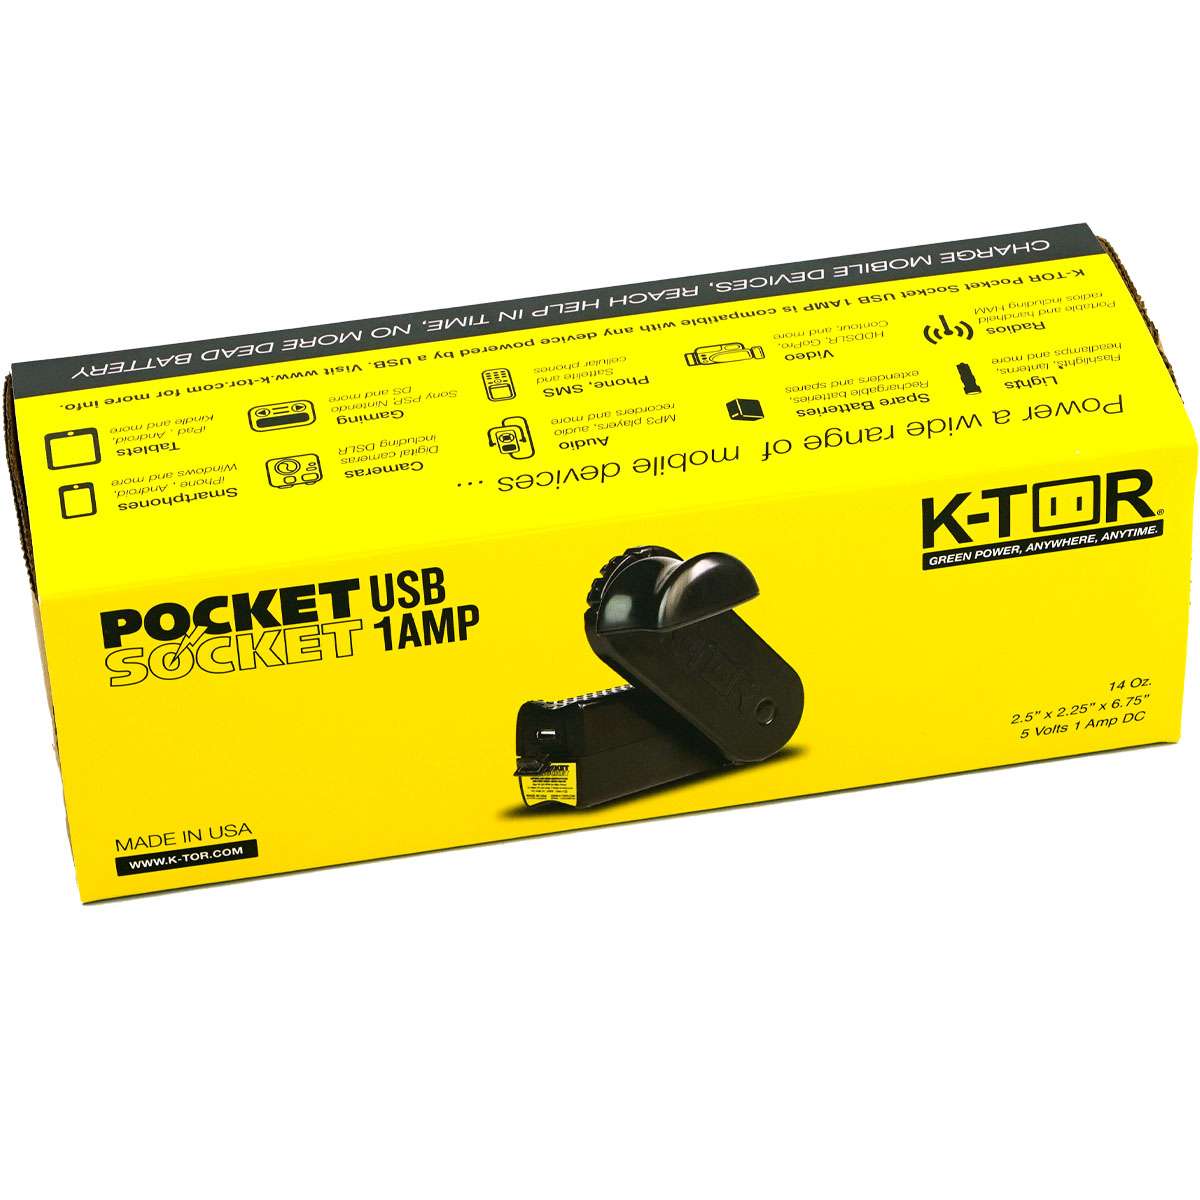 K-TOR Pocket Socket USB 1 Amp Hand Crank Power Generator